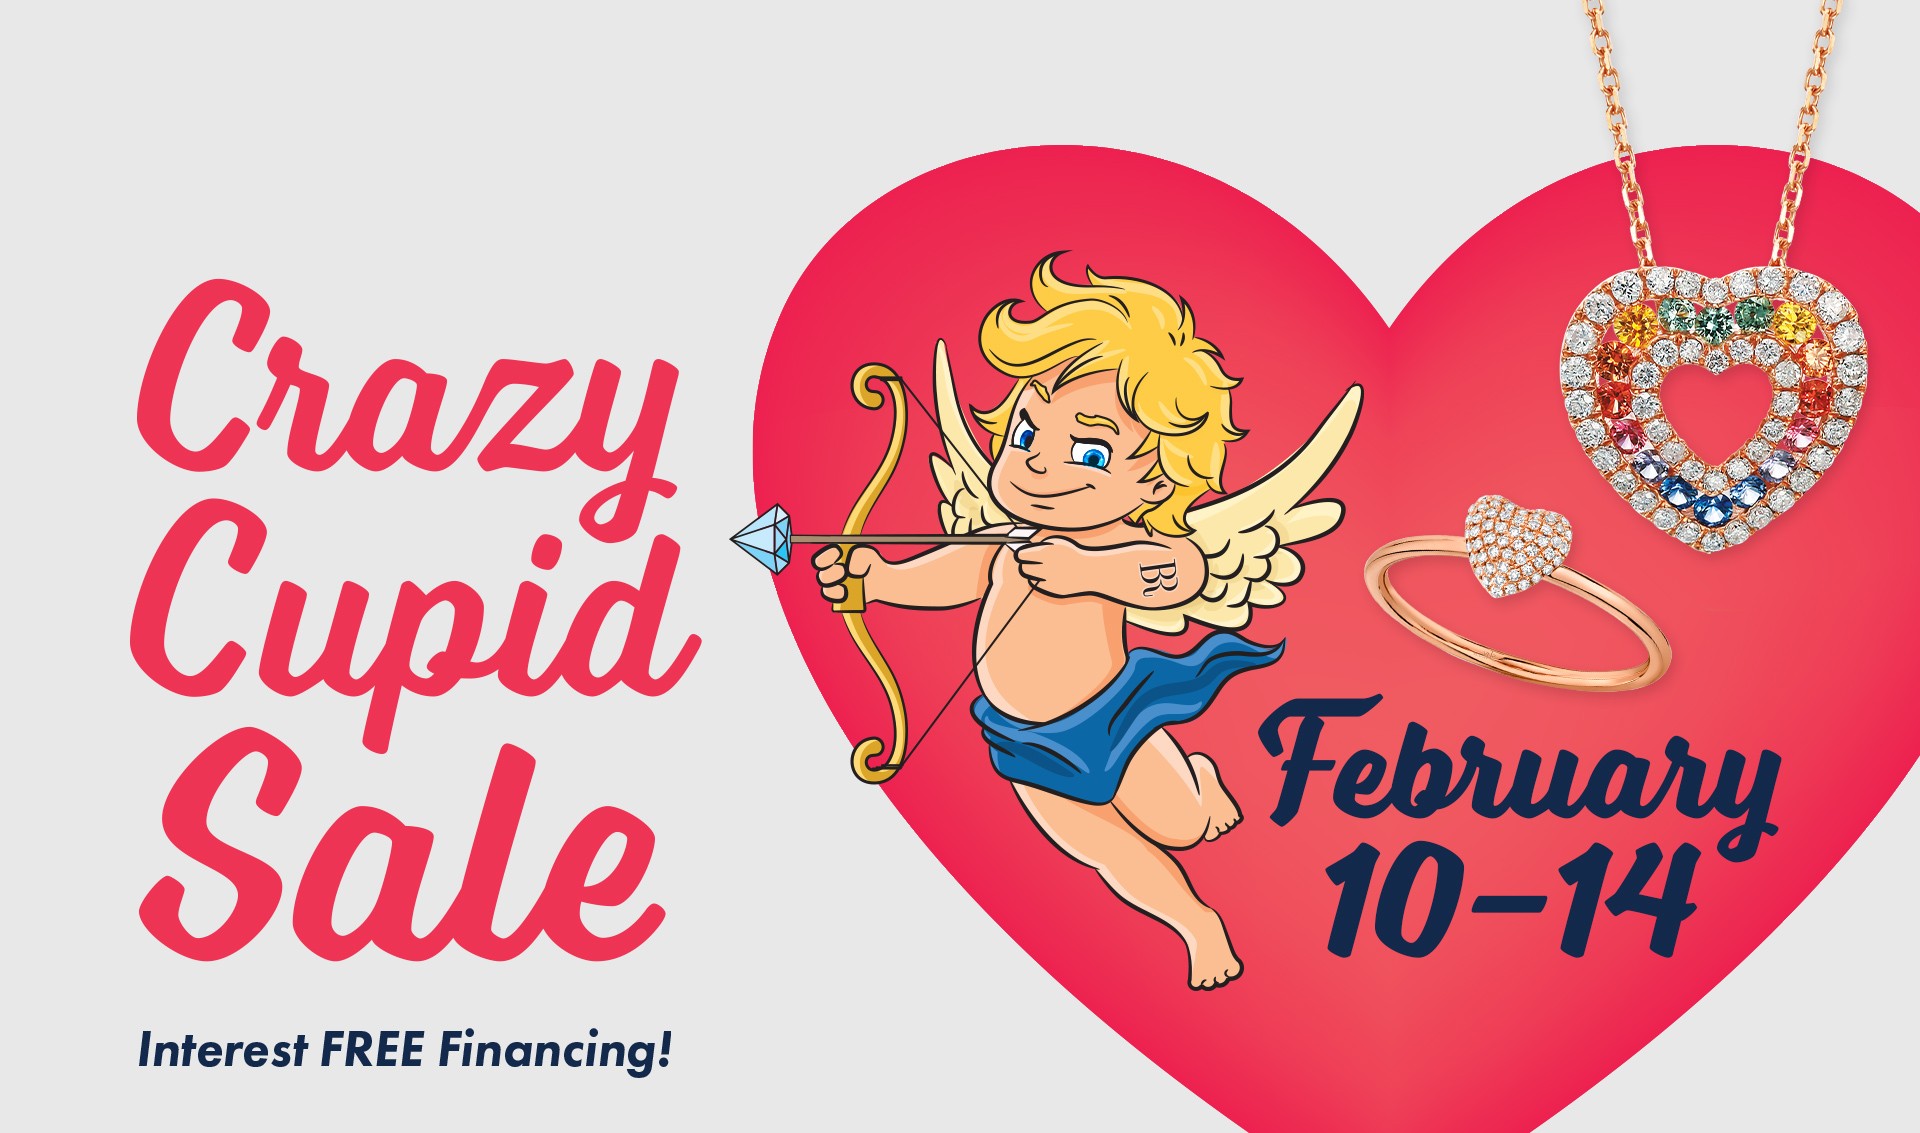 Crazy Cupid Sale